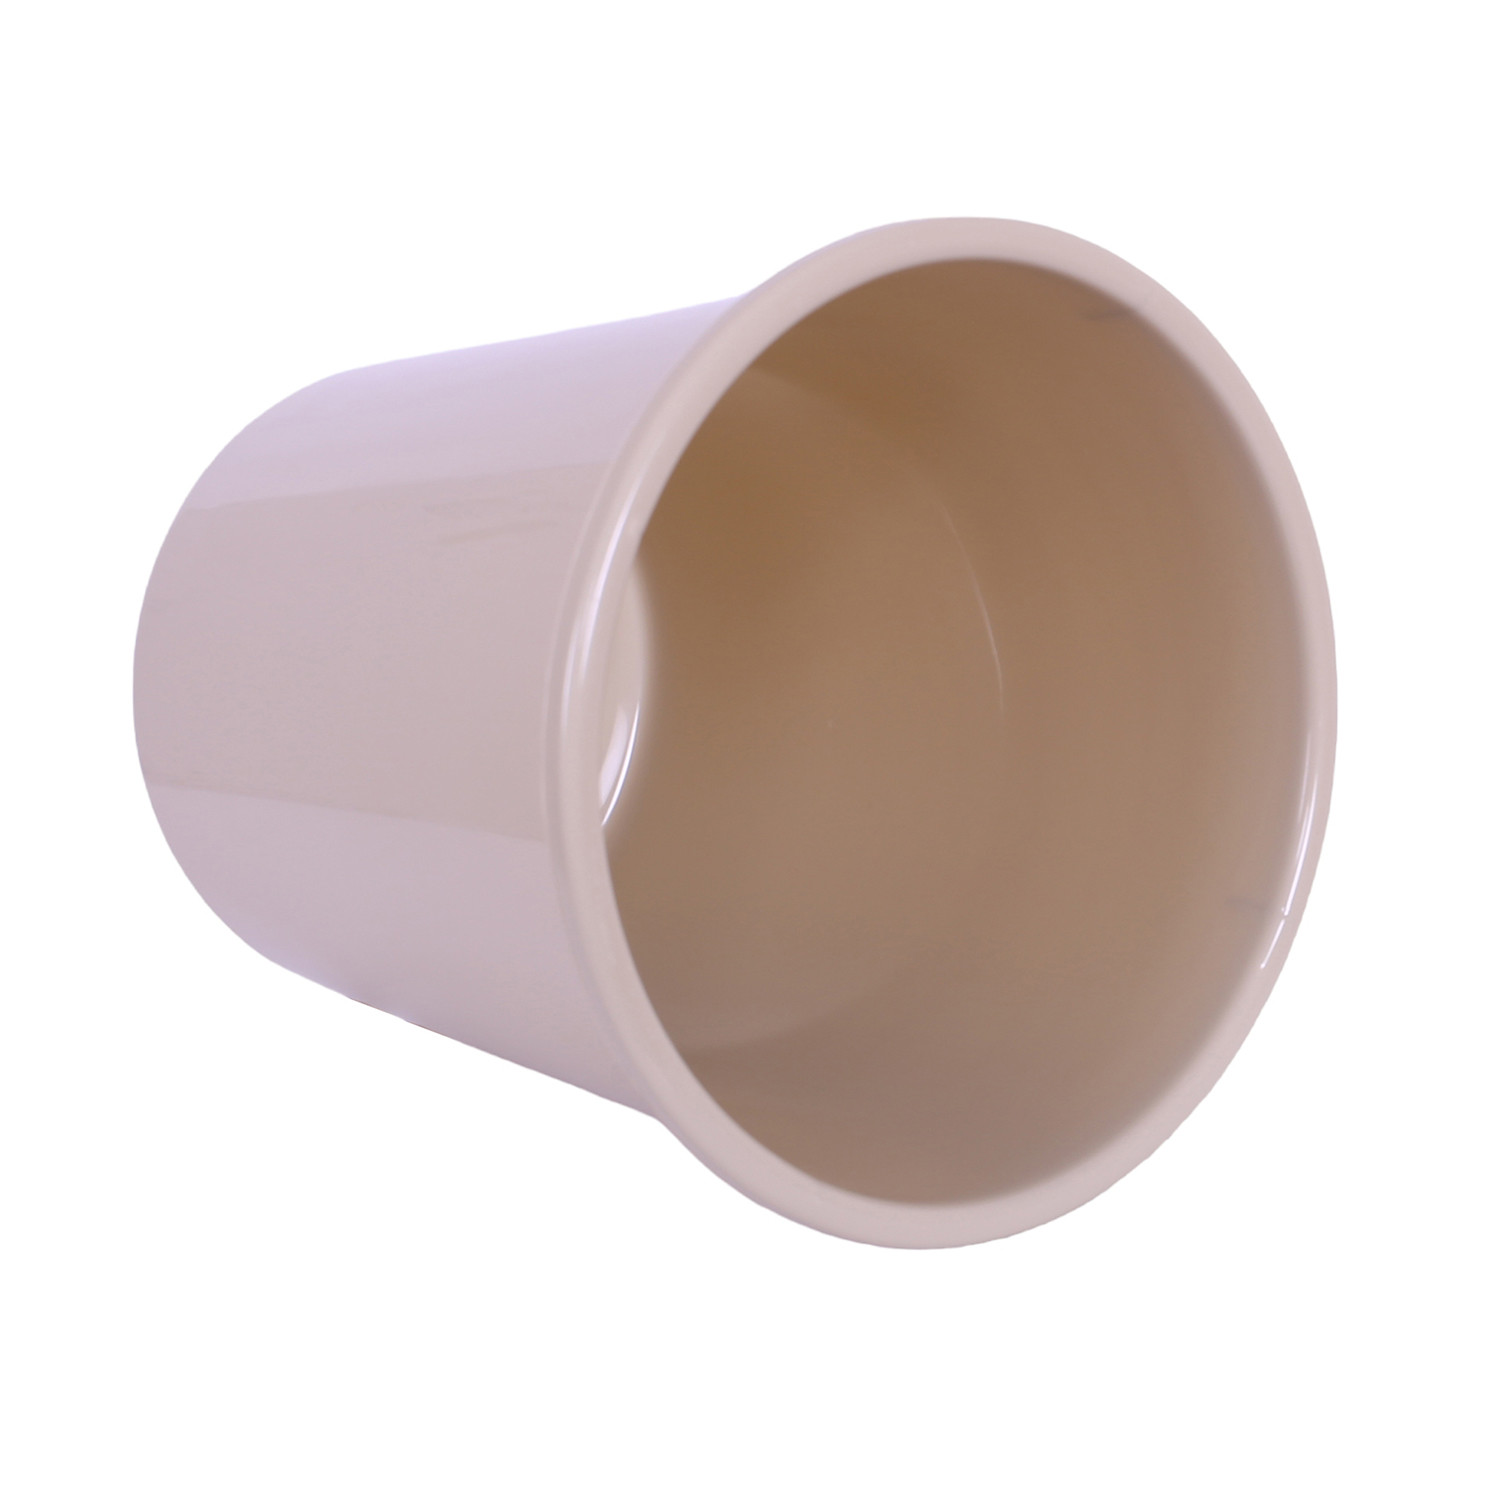 Kuber Industries Dustbin | Open Dustbin | Plastic Garbage Dustbin | Dustbin For Kitchen | Dustbin For Bathroom | Office Dustbin | Plain Sada Dustbin | 13 LTR | Beige